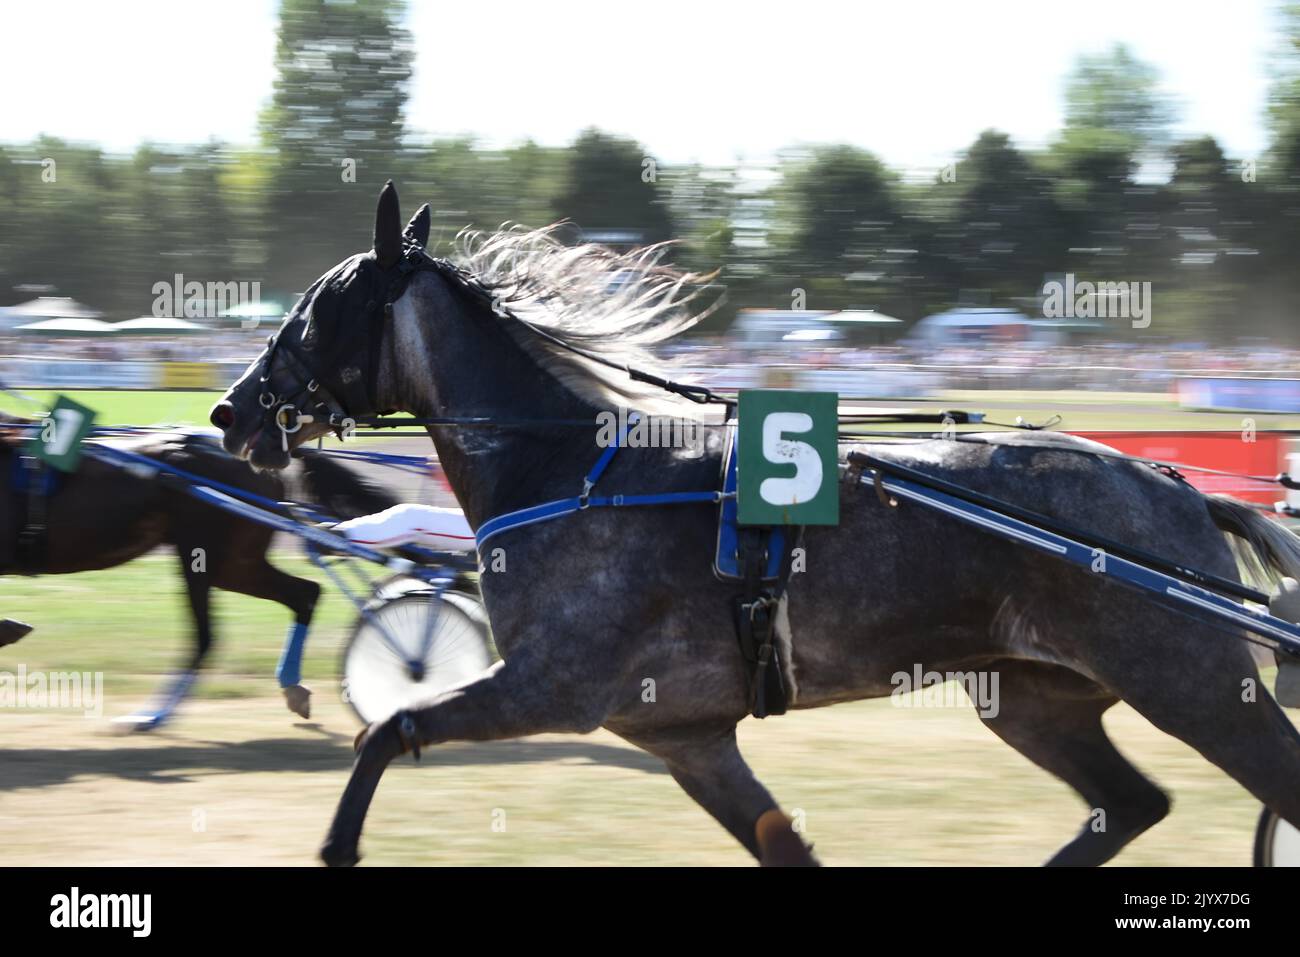 Course de Trotting, chevaux en vitesse dans l'hippodrome, course pour Paris d'affaires et sports de cheval Banque D'Images